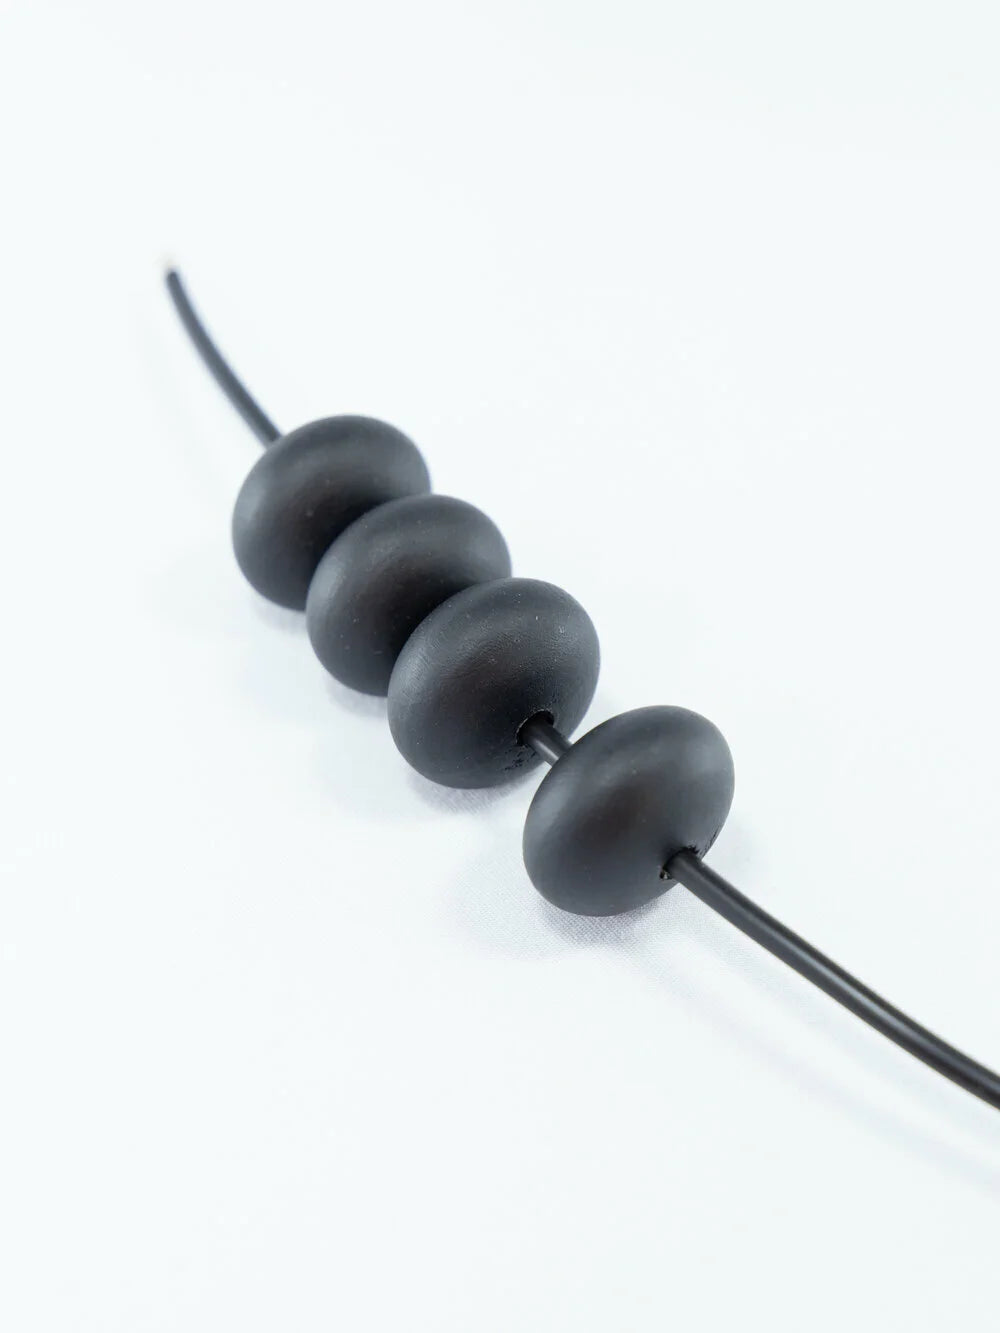 Perlina di legno nera opaca a forma di zucca